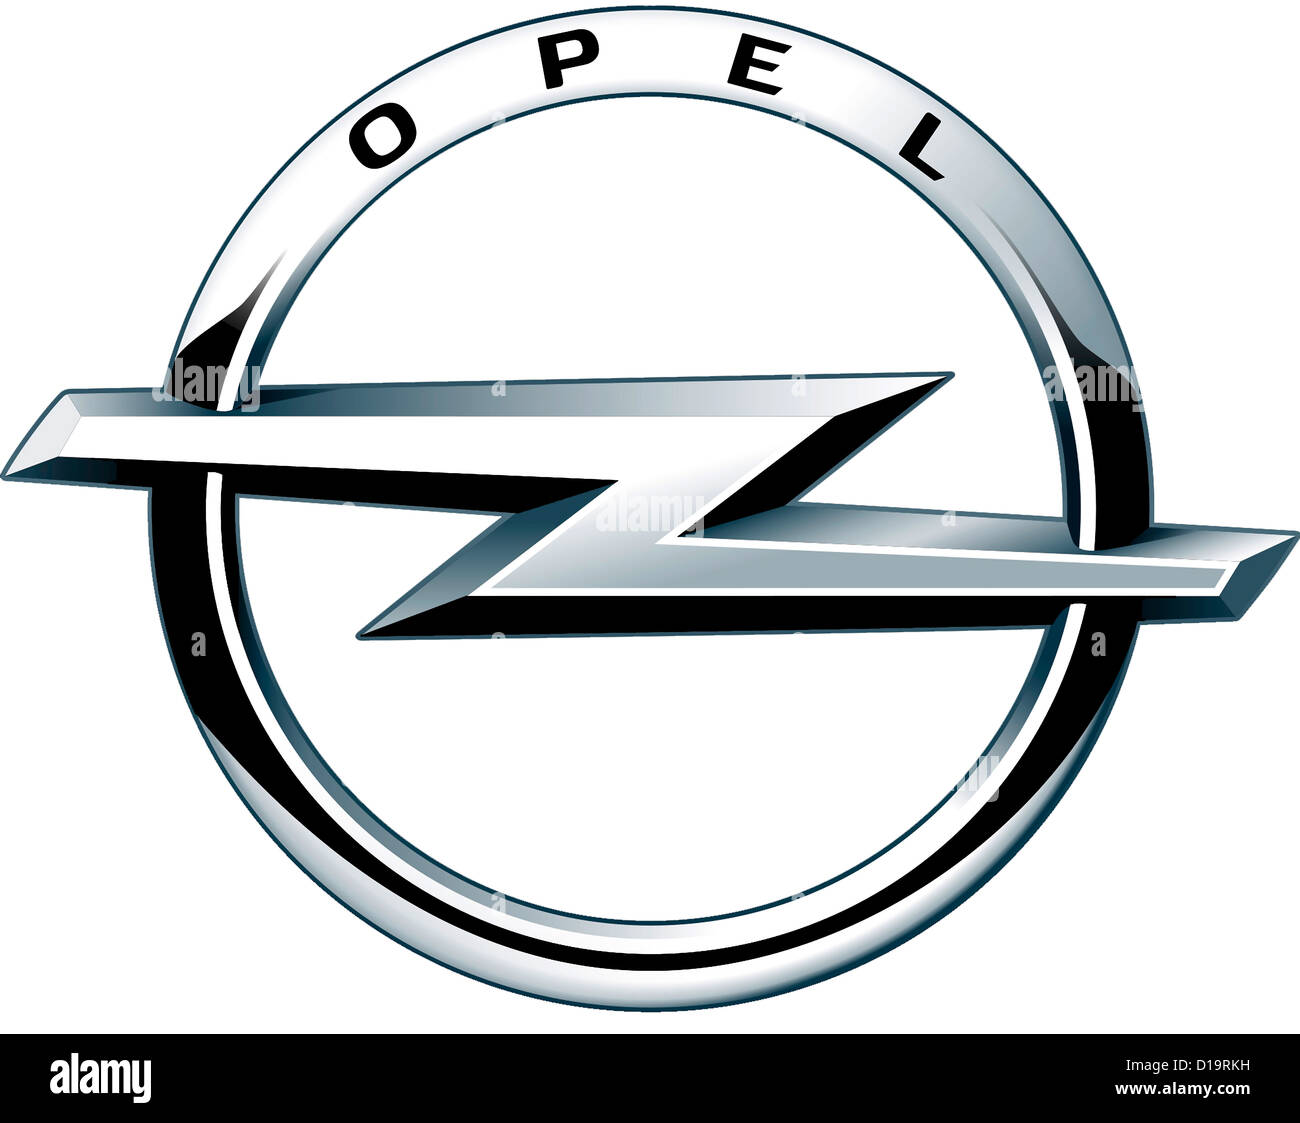 Logo du constructeur automobile allemand Opel avec le siège à